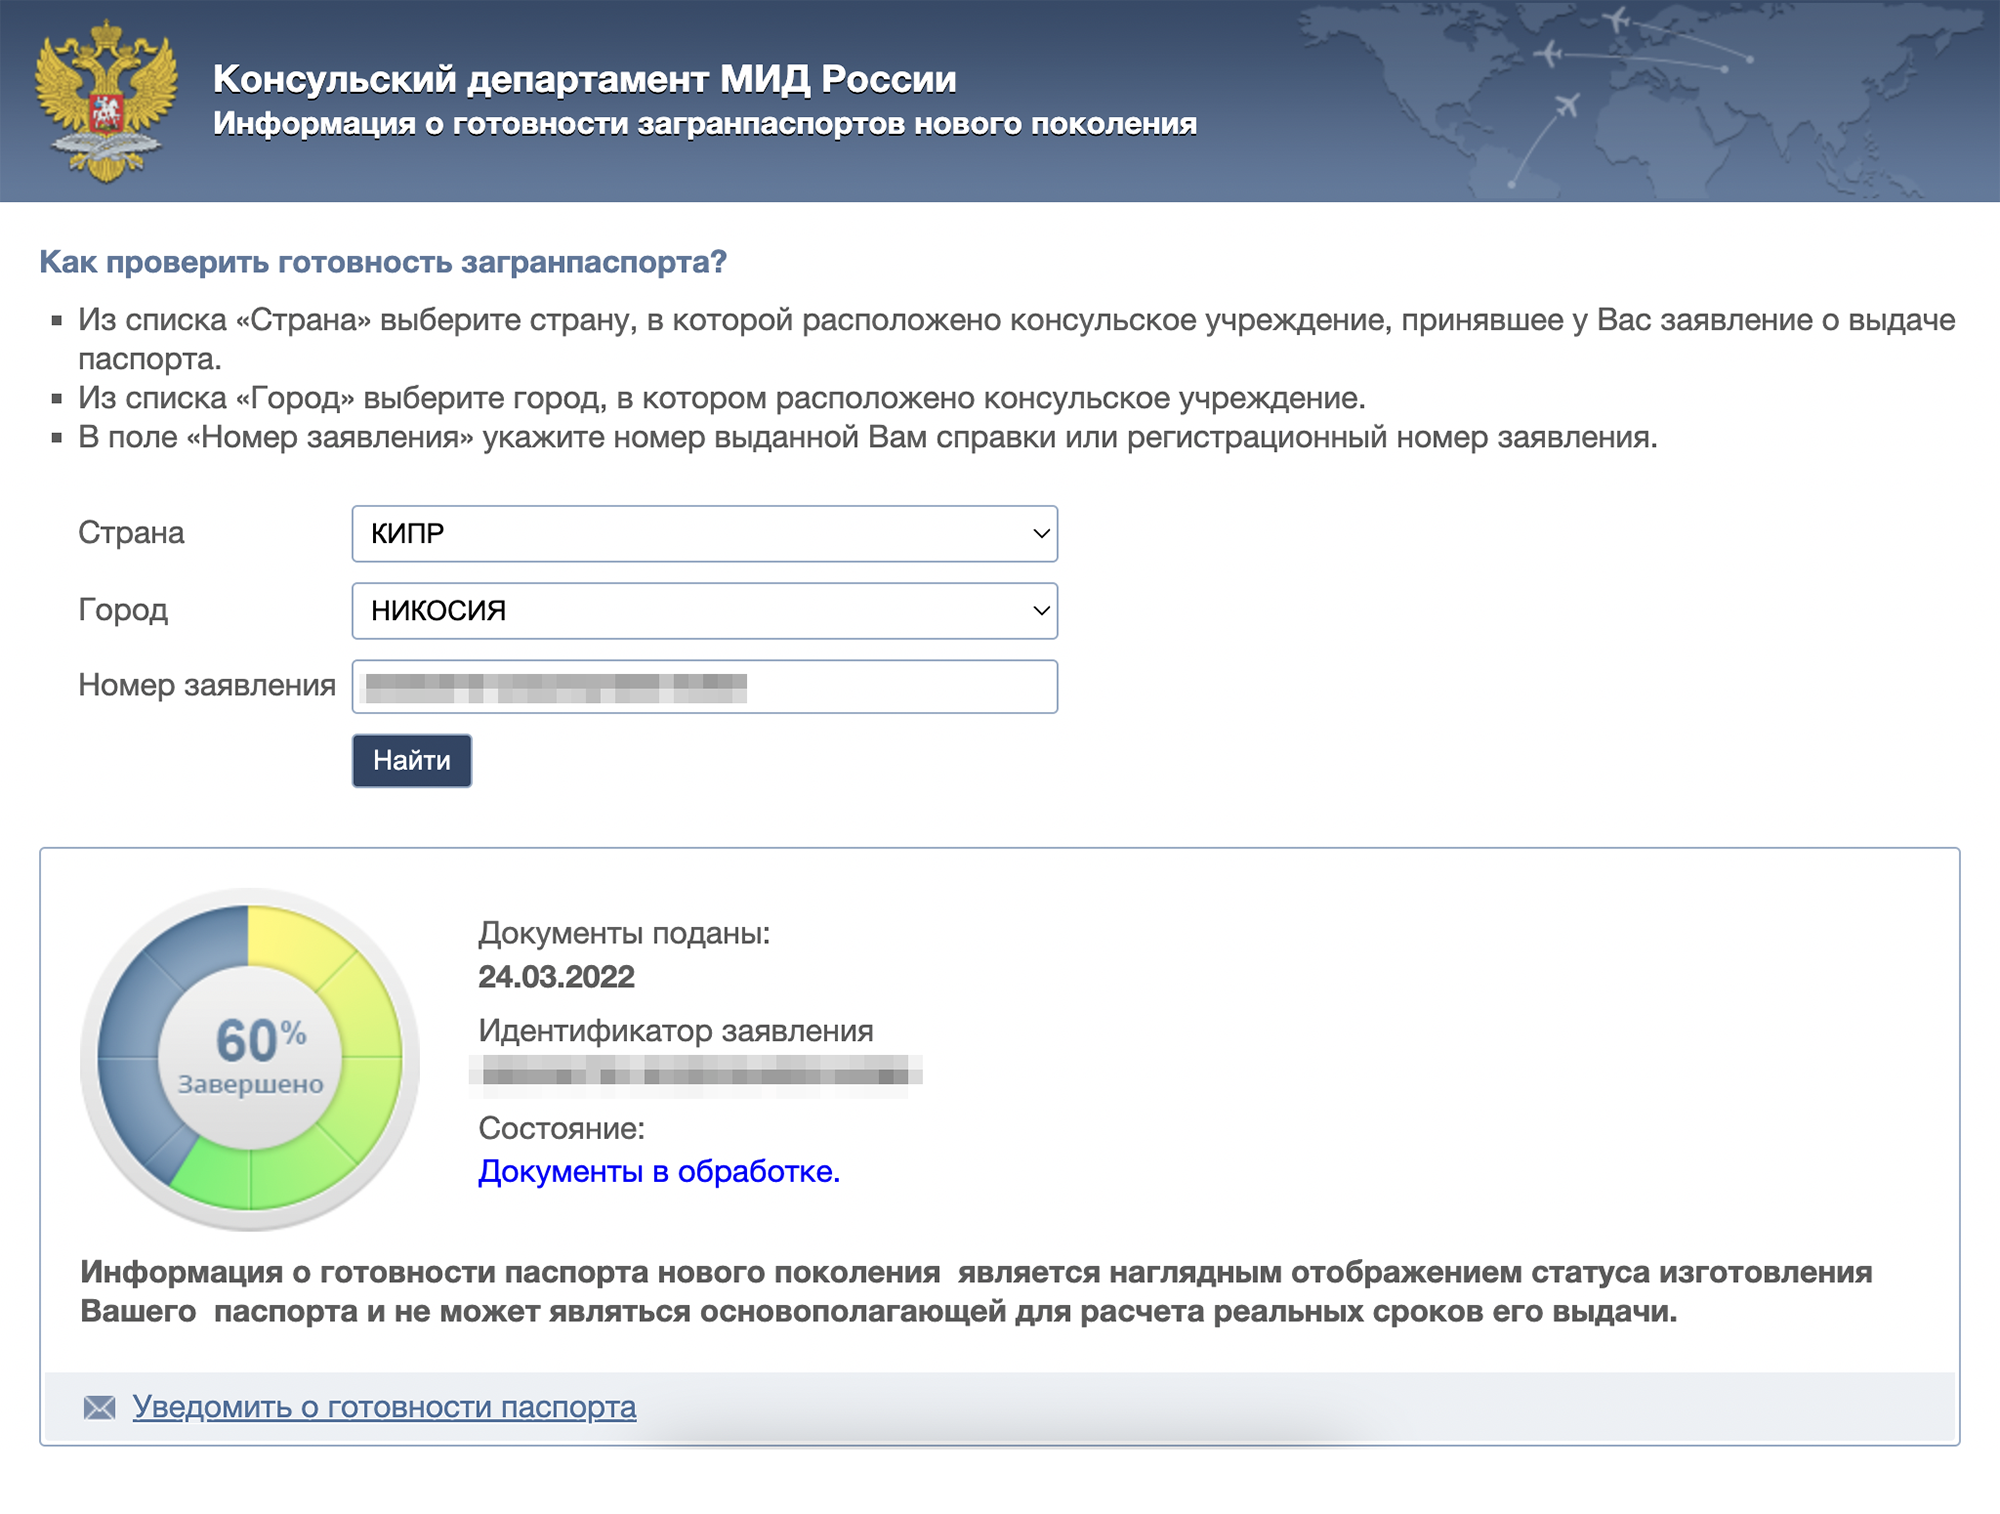 На этой странице я отслеживала готовность паспорта. Источник: info.midpass.ru